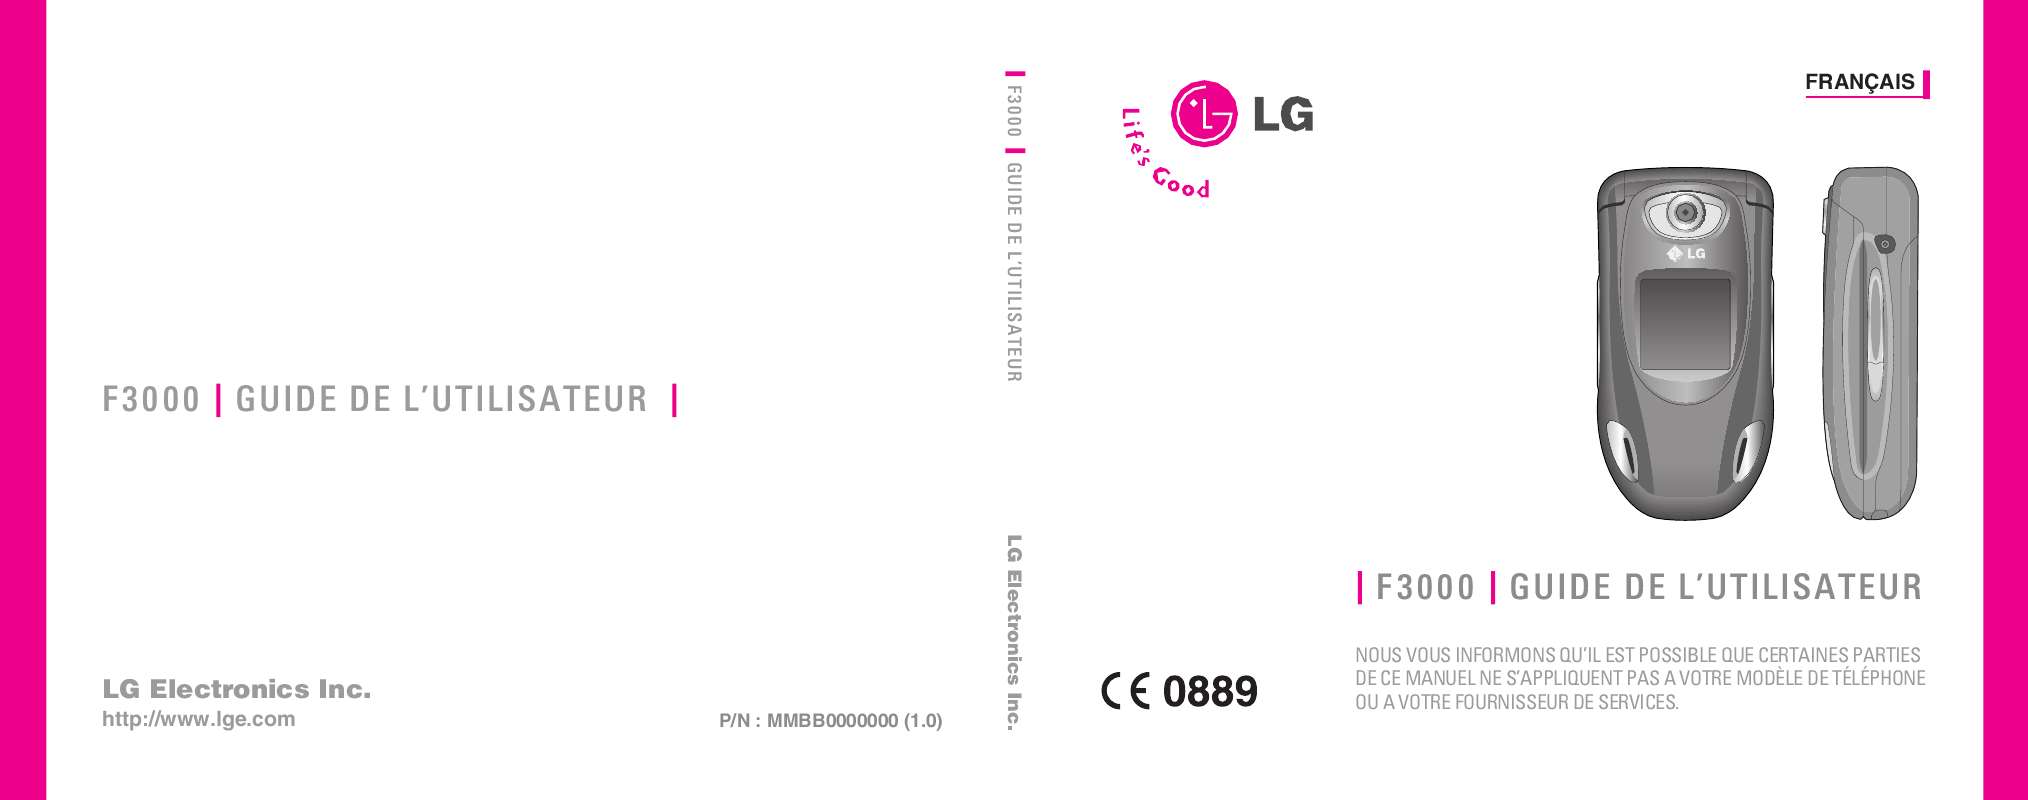 Guide utilisation LG F3000 de la marque LG